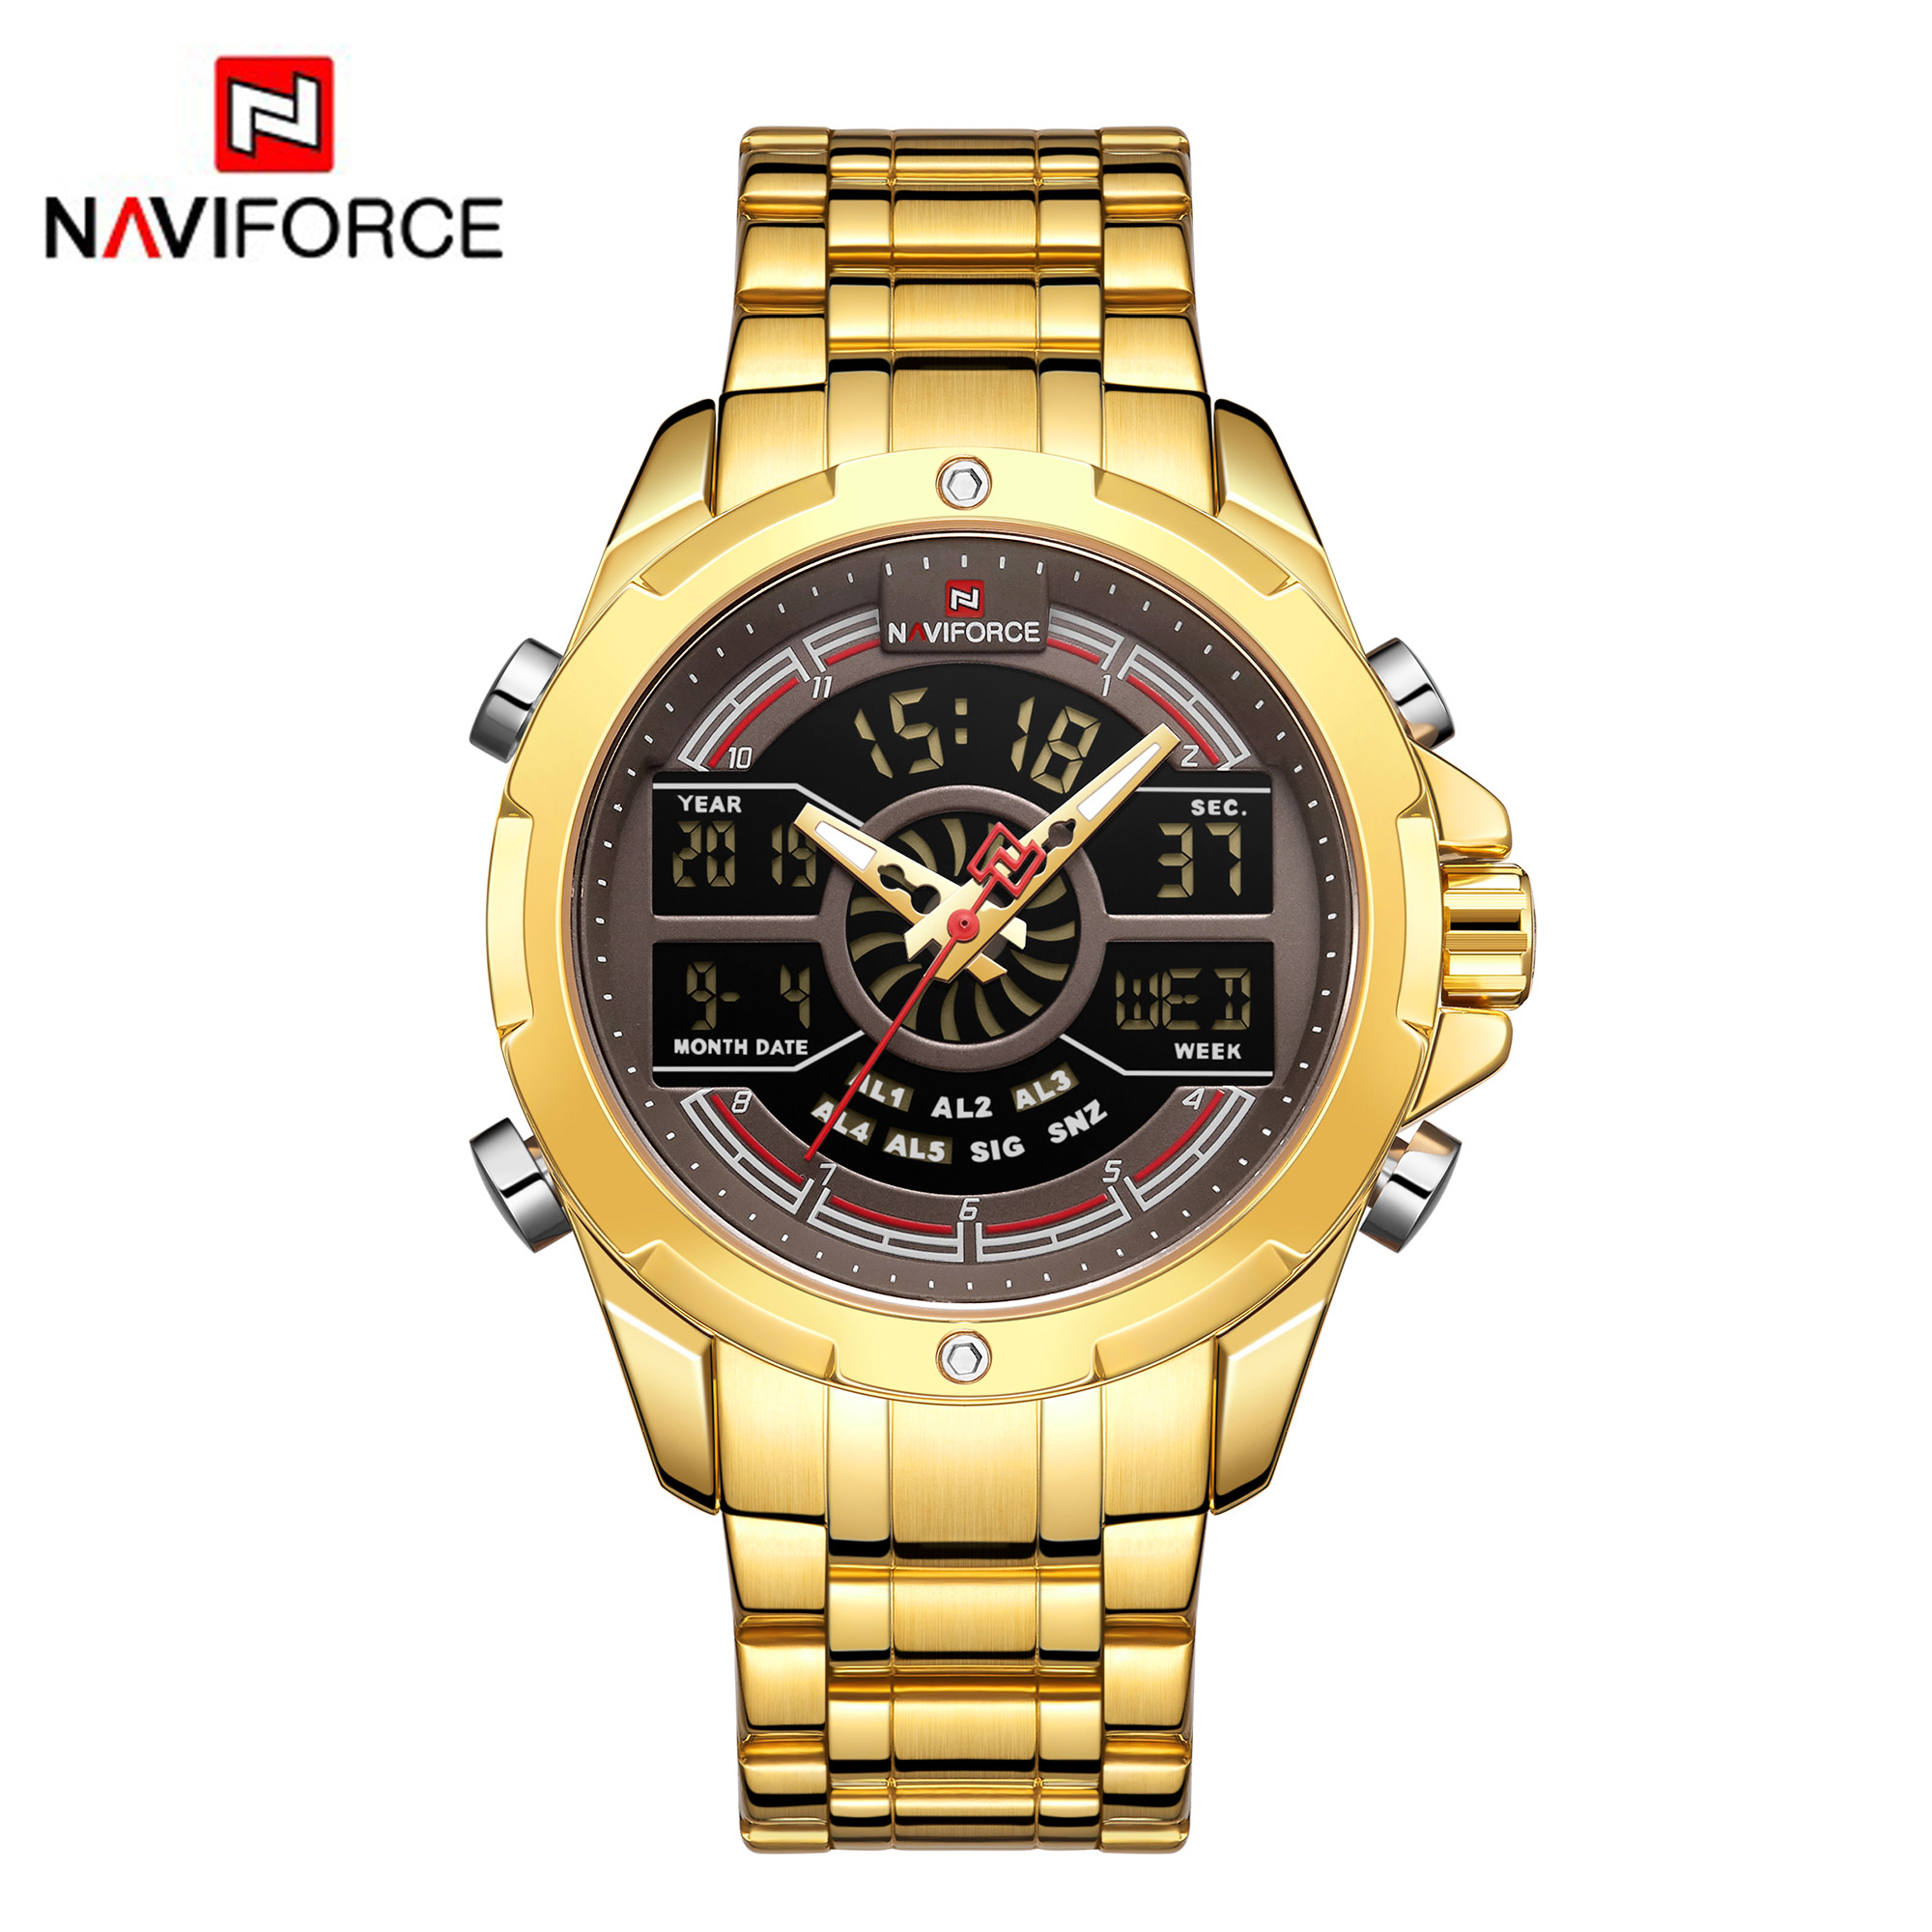 NAVIFORCE NF 9170 Stainless Steel Multifunctional Waterproof Wrist Watch for Men - Silver Black